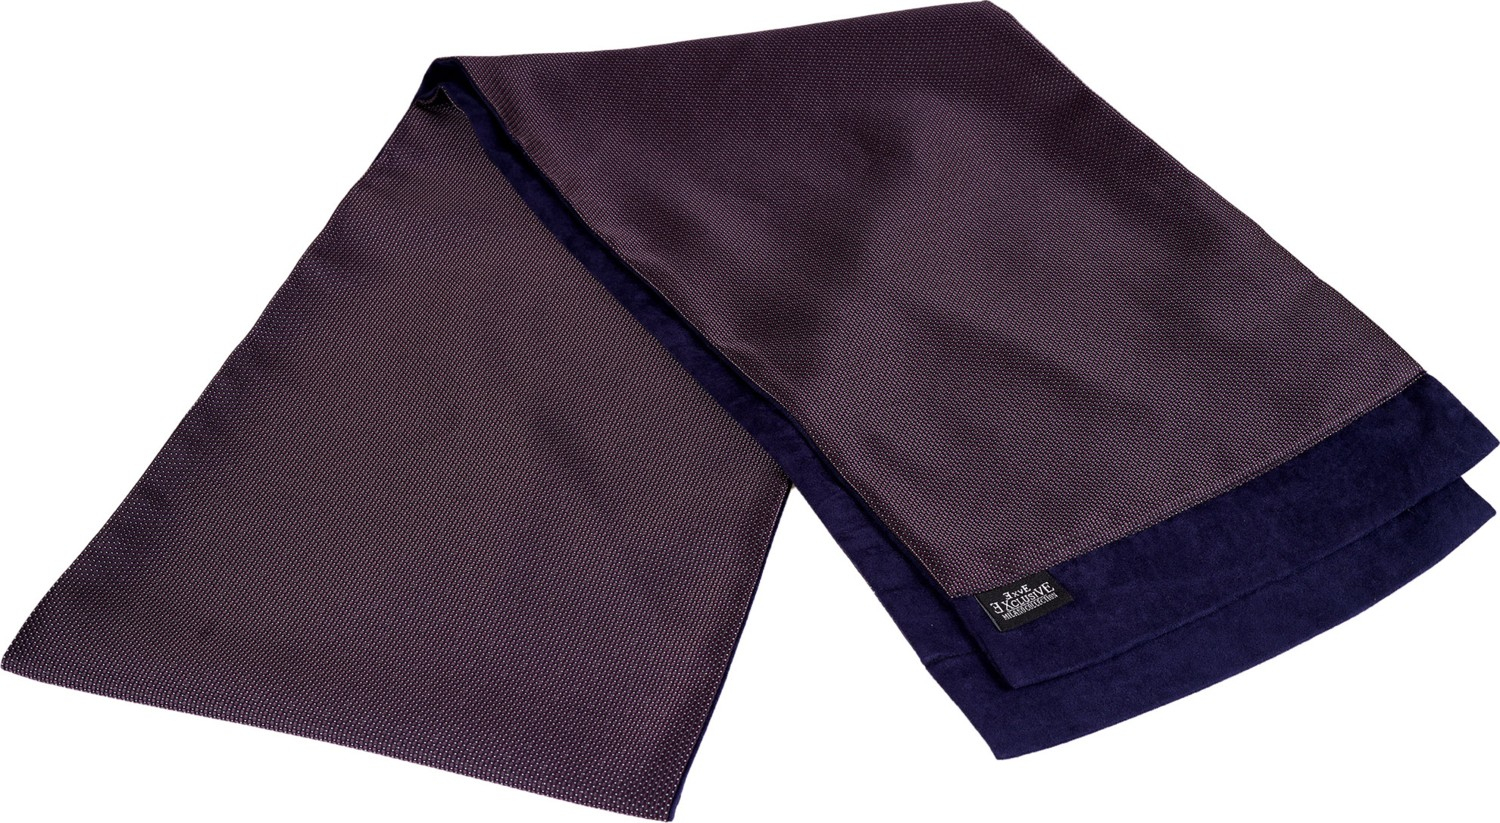 Эксклюзивный сине-фиолетовый шарф-палантин Exve с геометрическим узором, выполненный из элегантного жаккарда с двусторонним плетением.